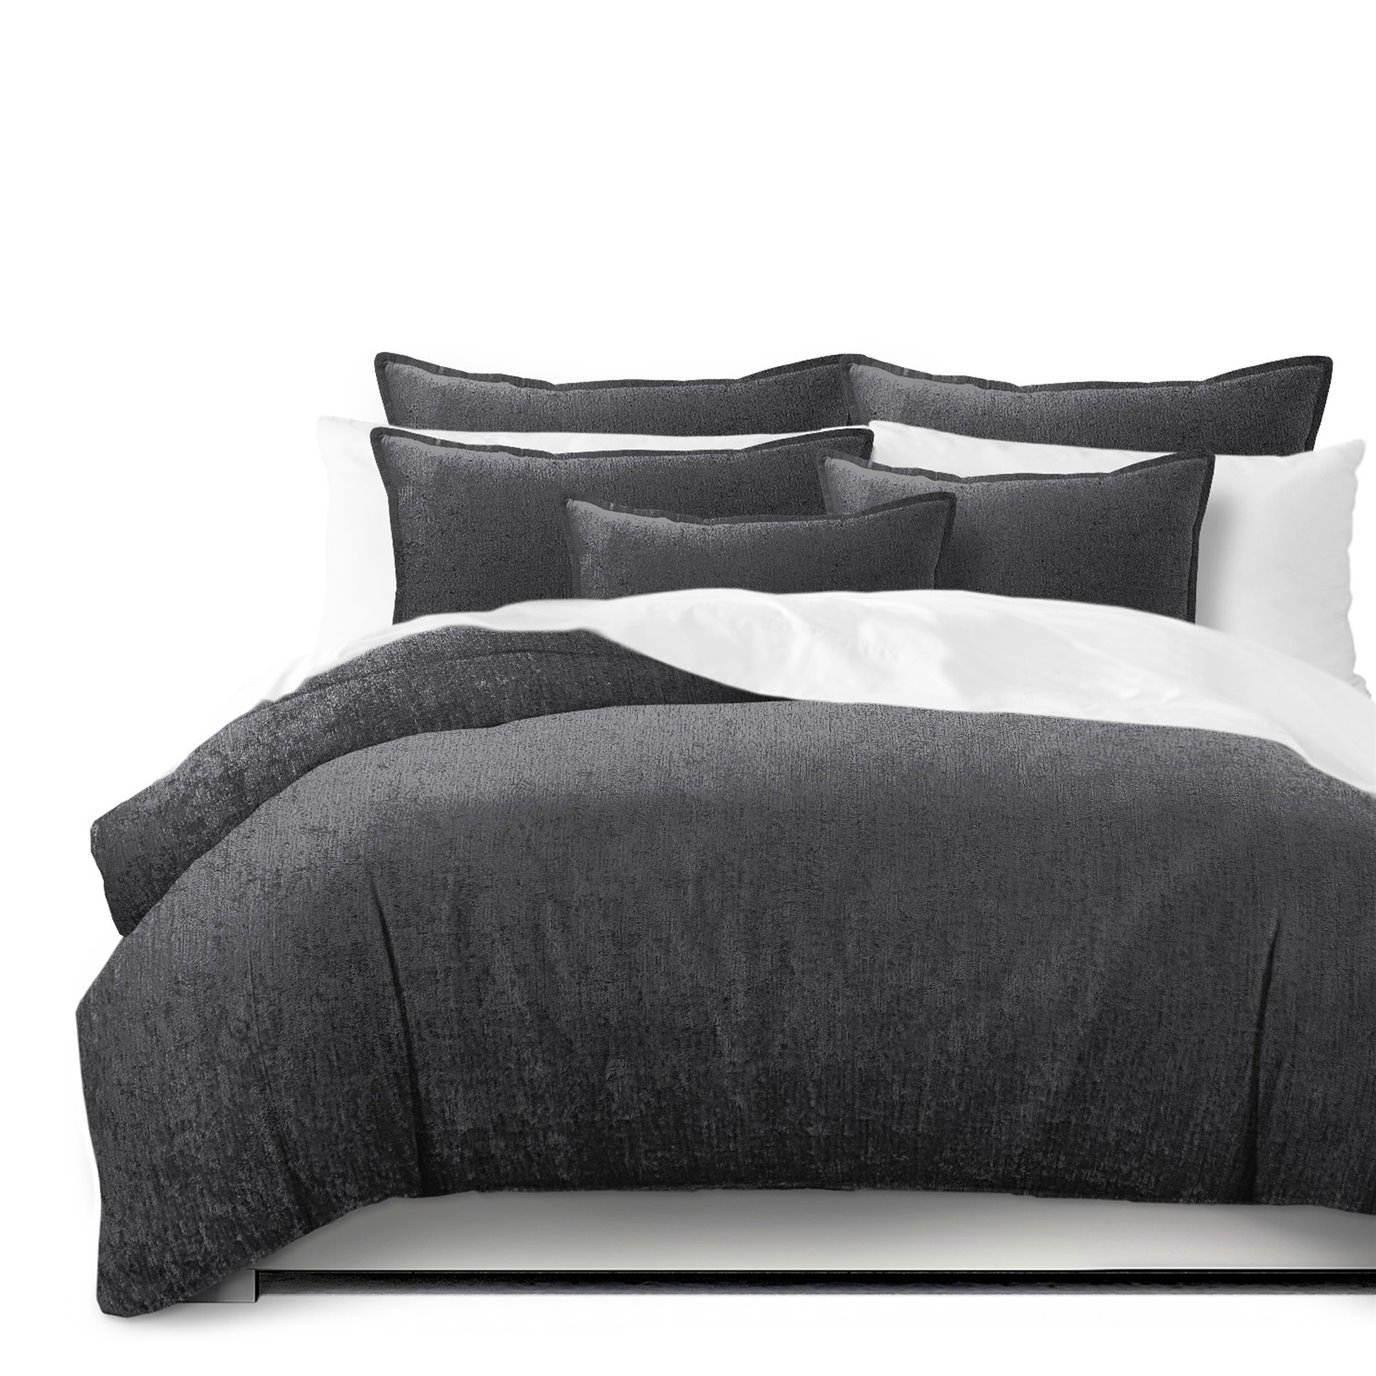 Juno Velvet Gray Comforter and Pillow Sham(s) Set - Size Super King